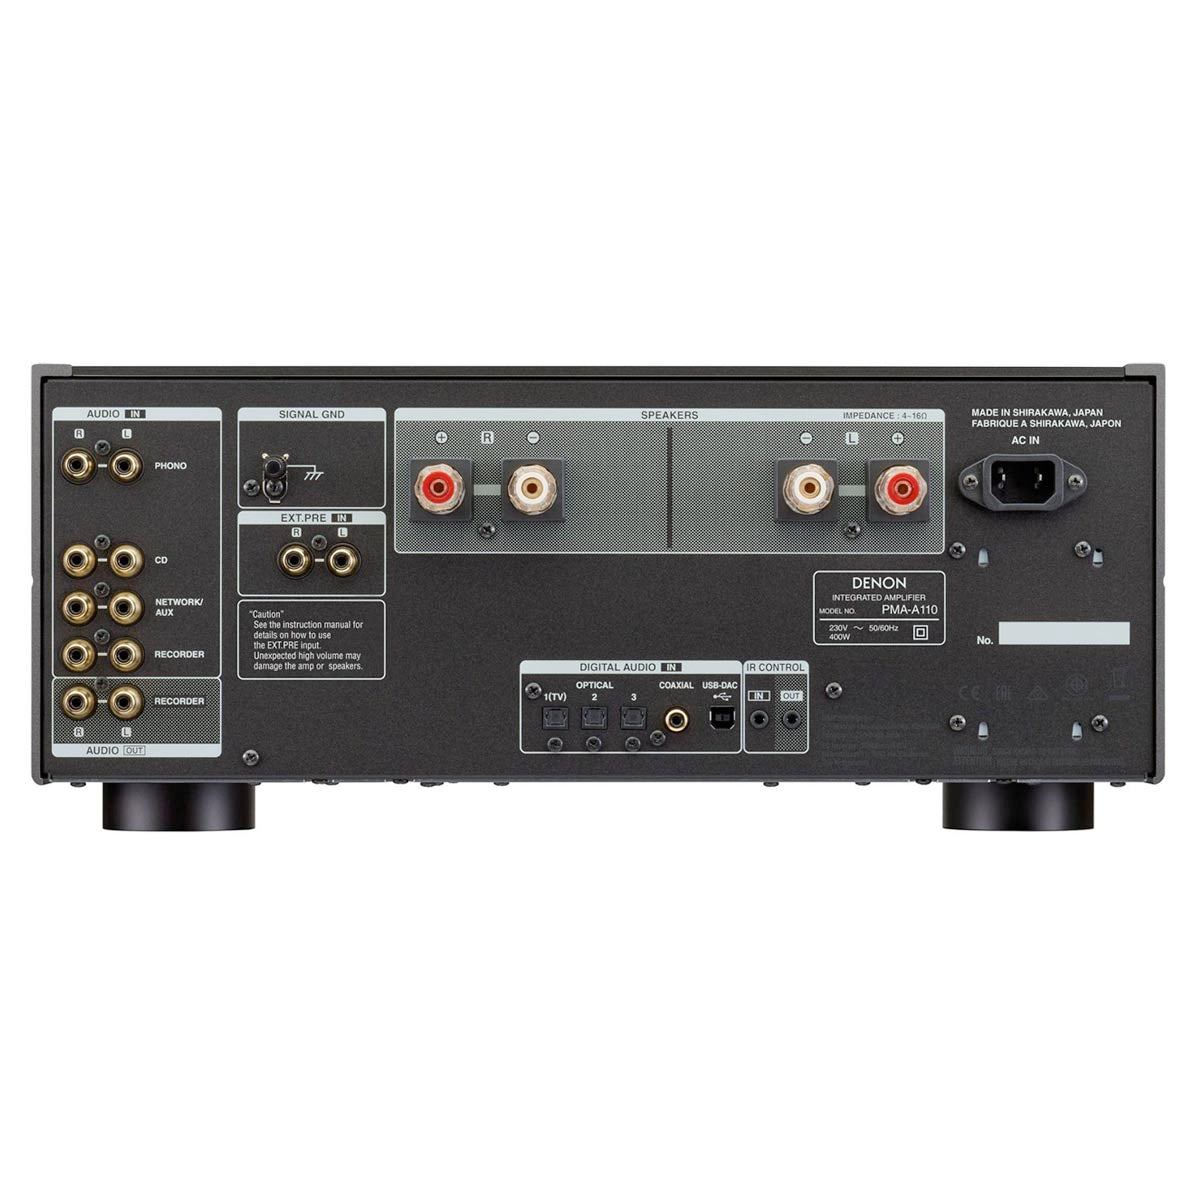 Denon PMA-A110GS Stereo Amplifier - Graphite Silver